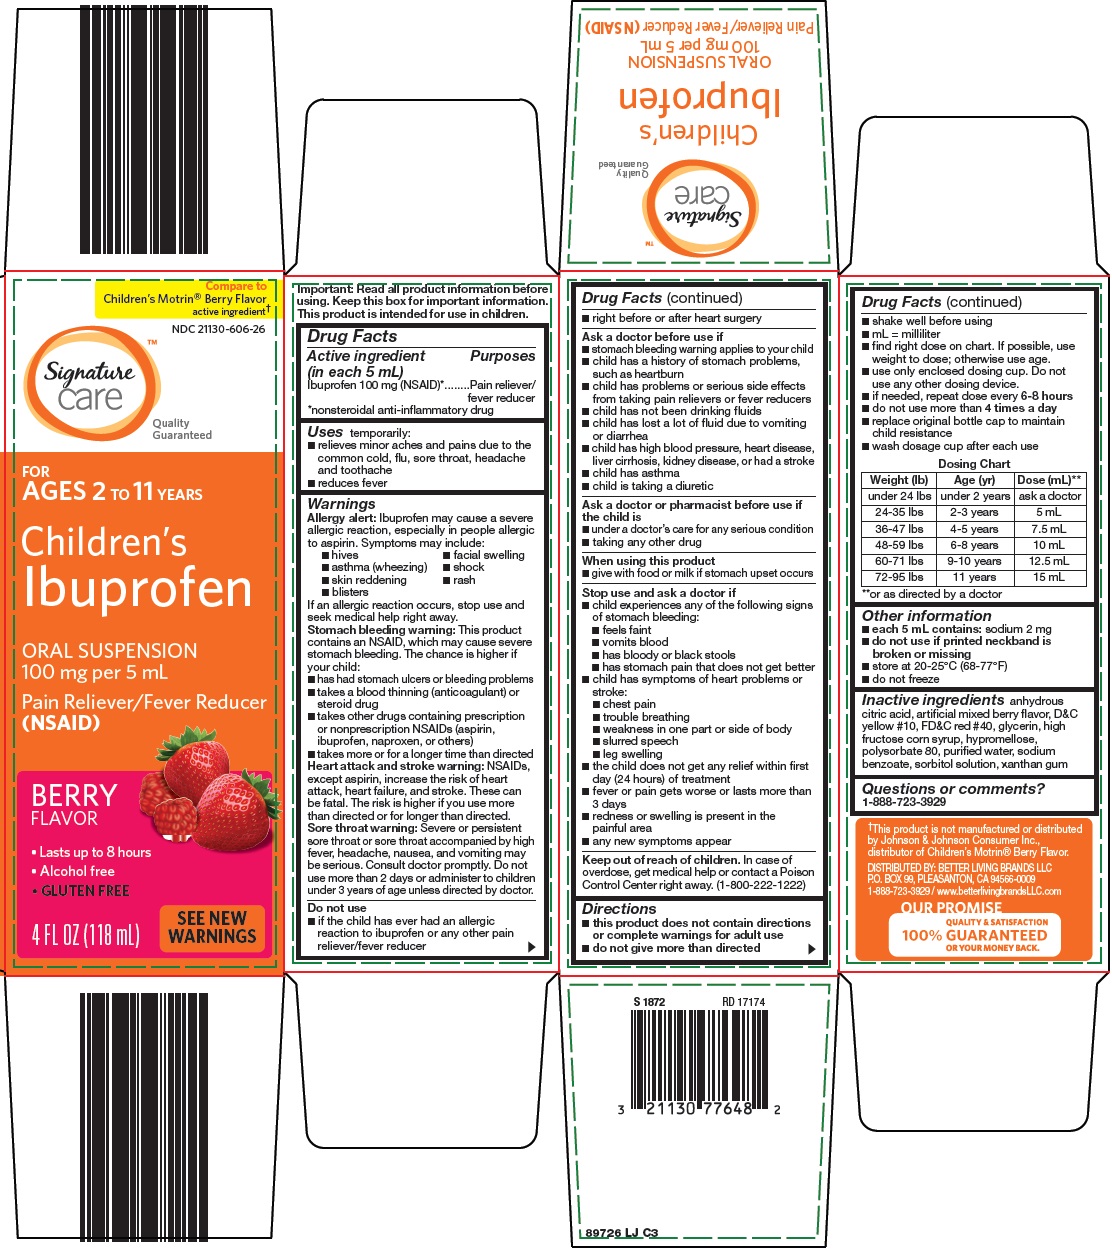 897-lj-children's ibuprofen.jpg